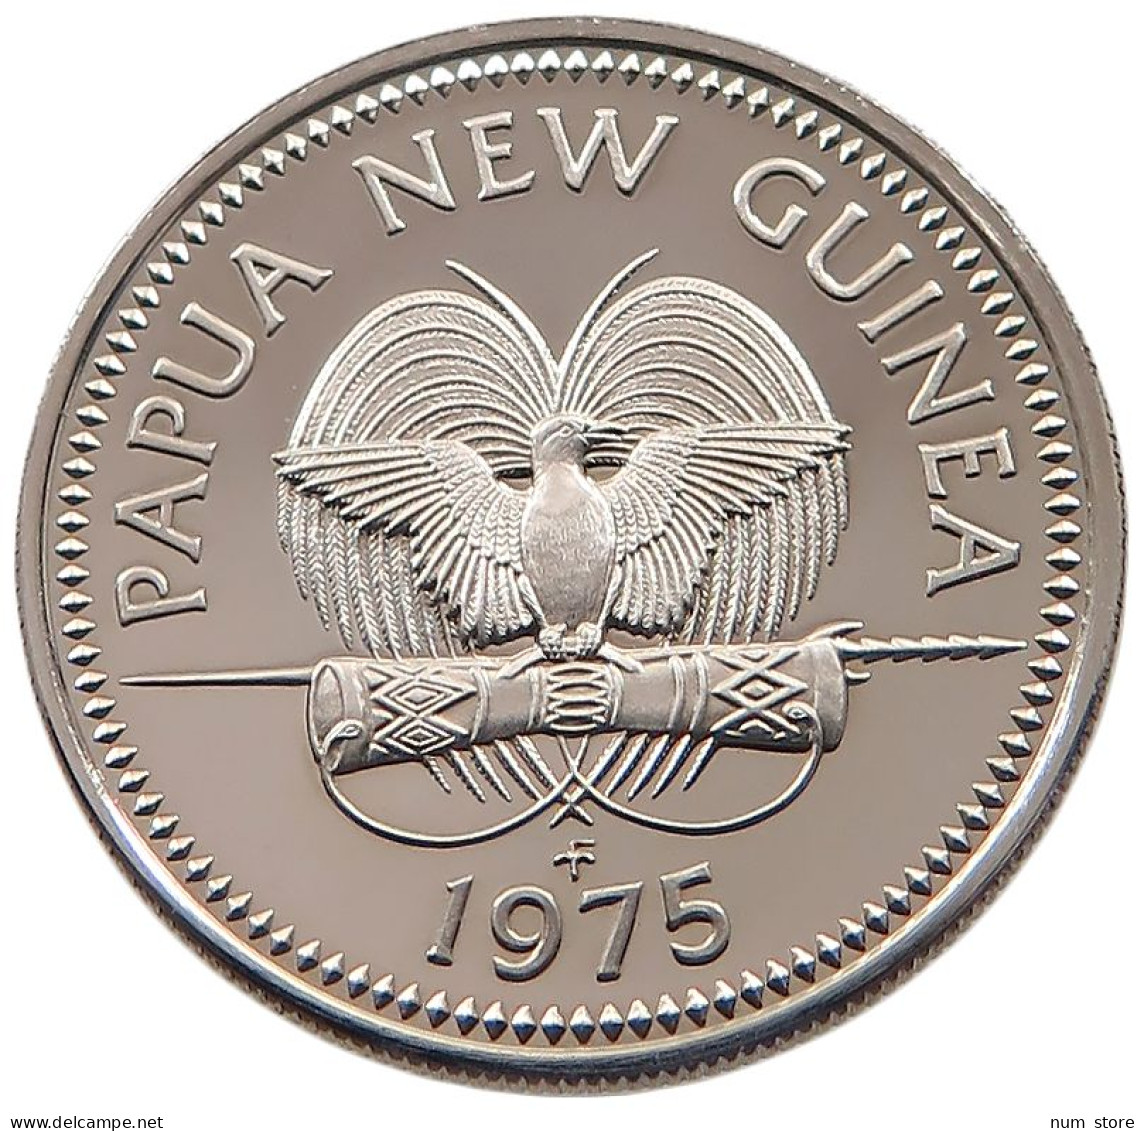 NEW GUINEA 10 TOEA 1975  #alb061 0253 - Papouasie-Nouvelle-Guinée